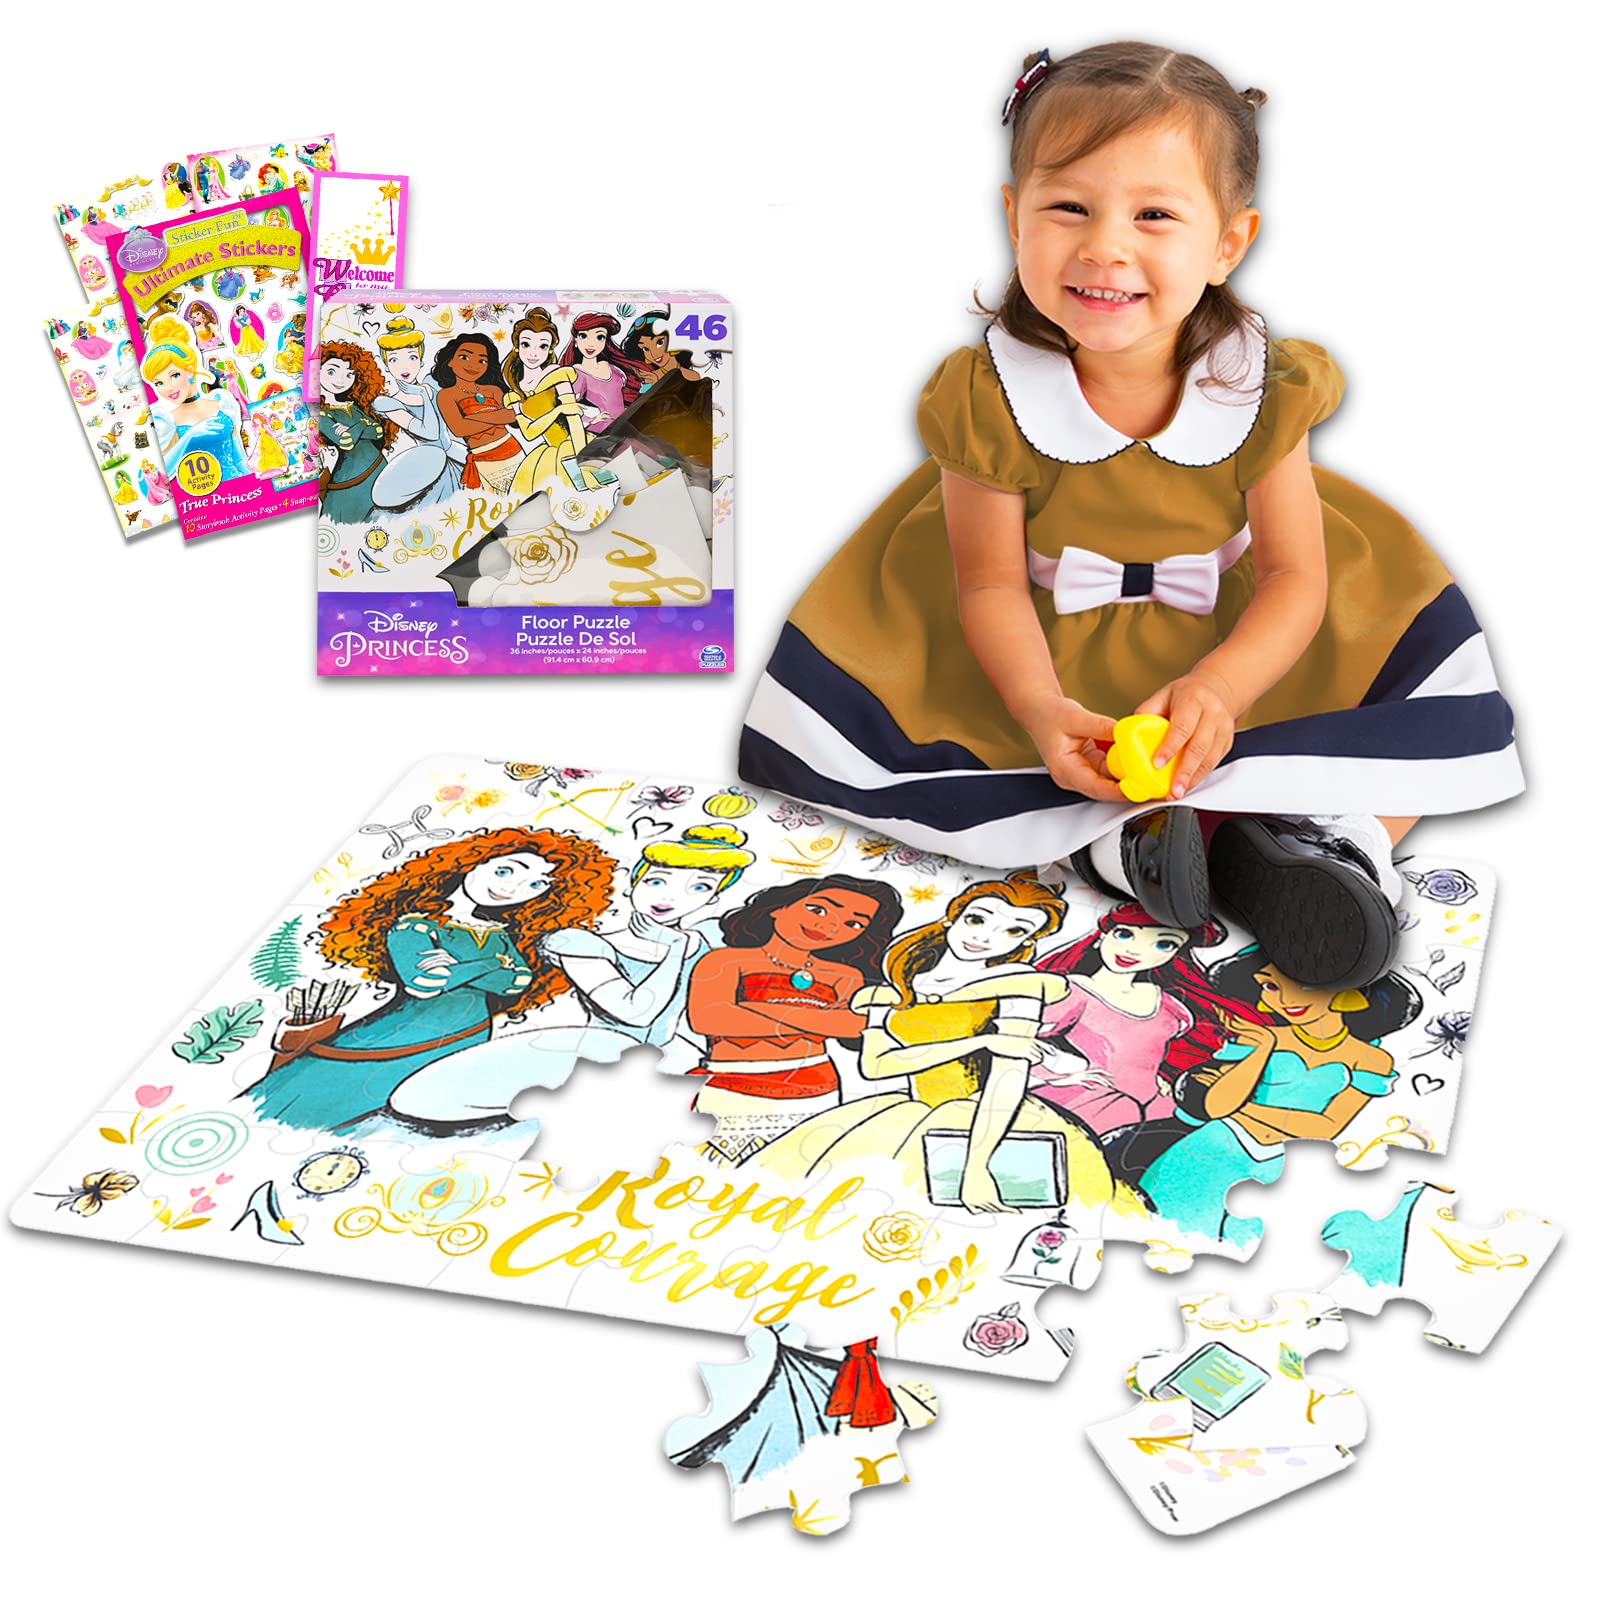 Classic Disney Disney Princess Floor Puzzle for Kids, Toddlers - Princess 46 Piece Puzzle Bundle with Princess Stickers, More (Disney Princess